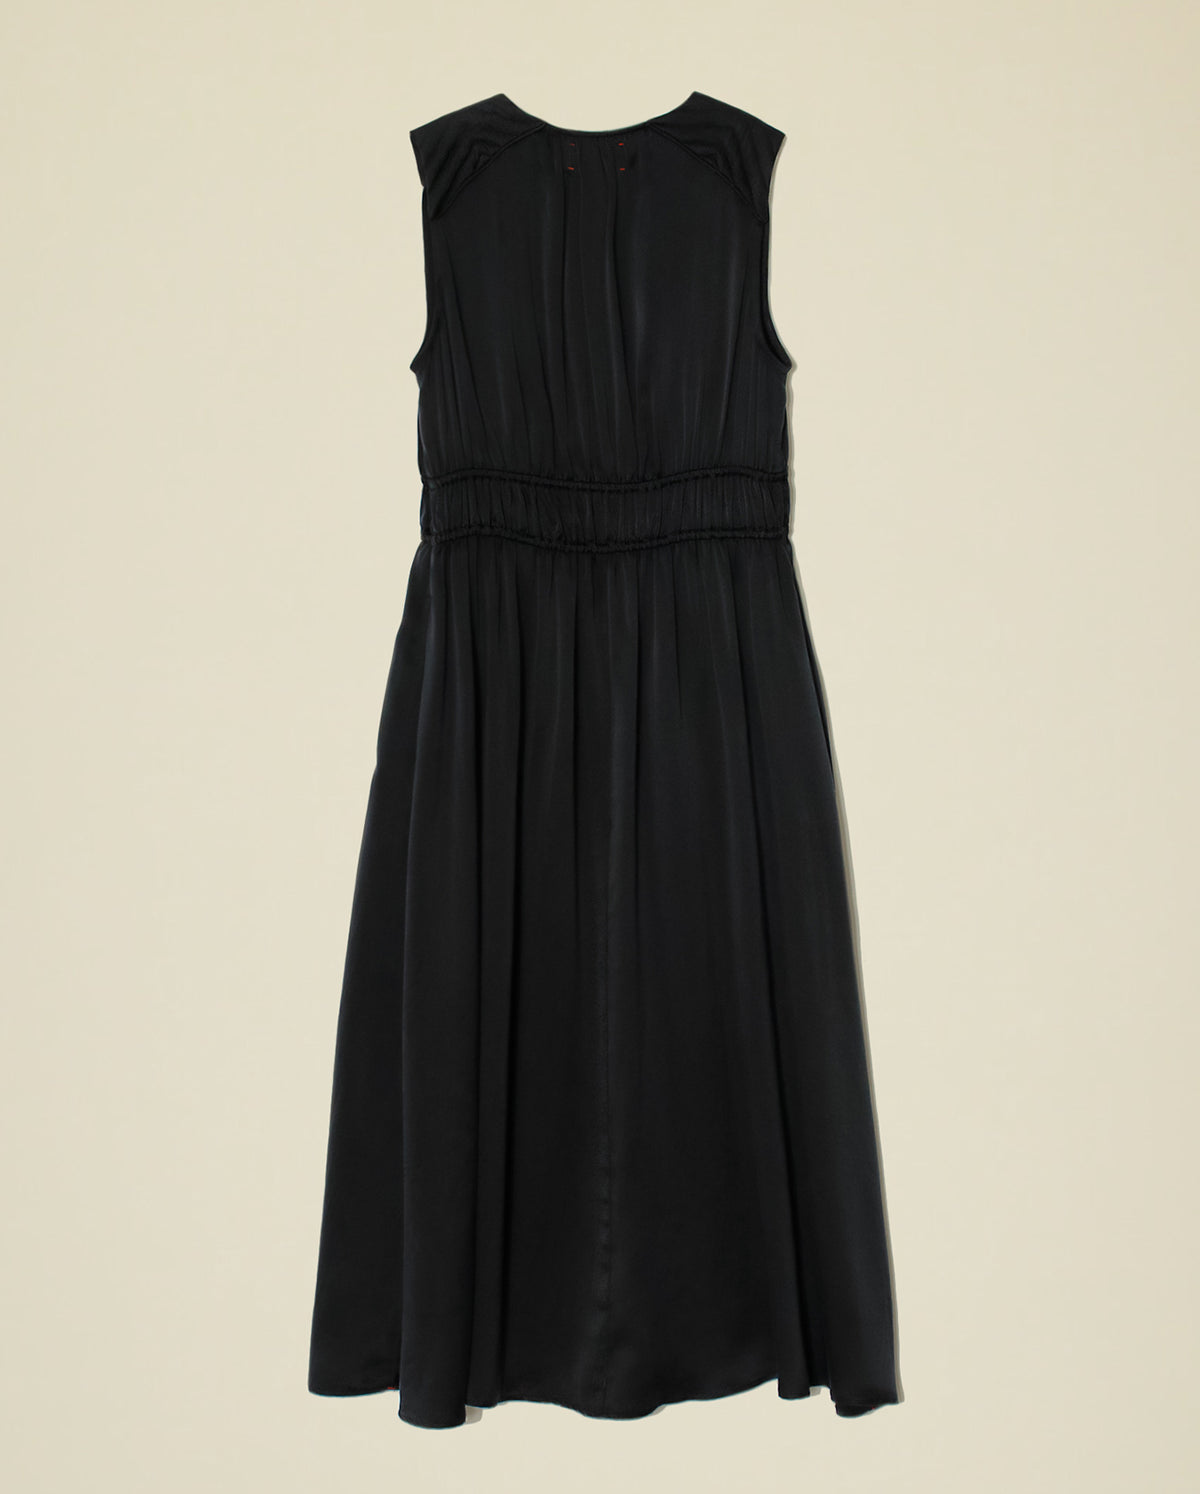 Elowyn Dress - Black